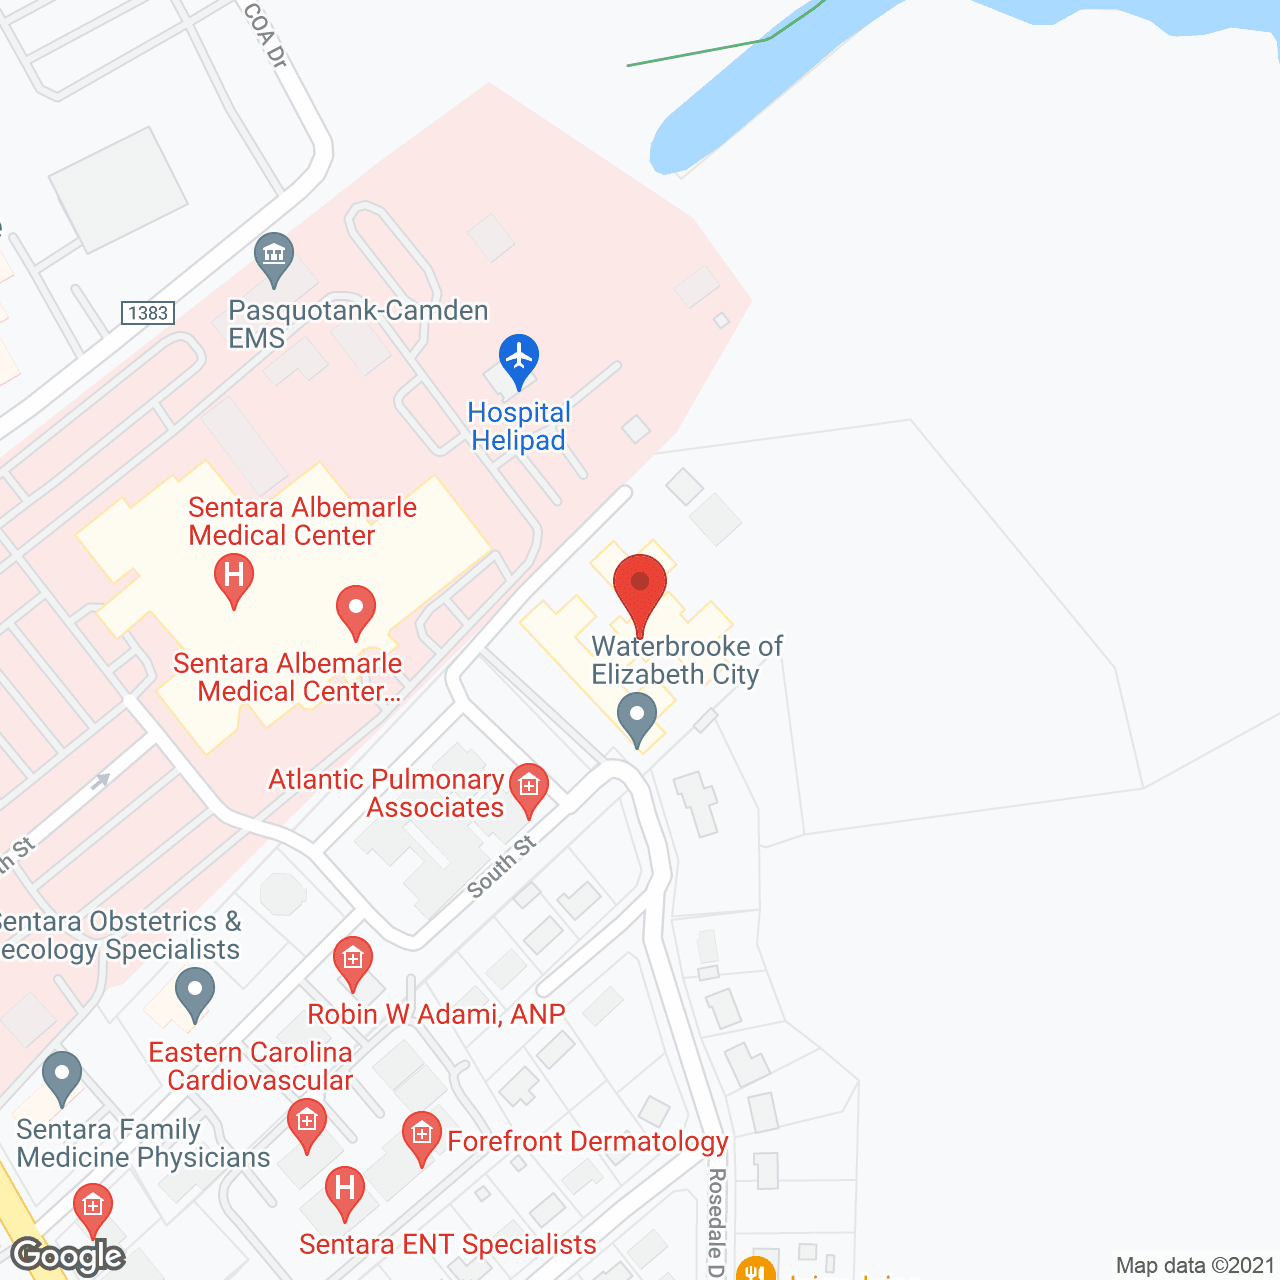 Waterbrooke of Elizabeth City in google map